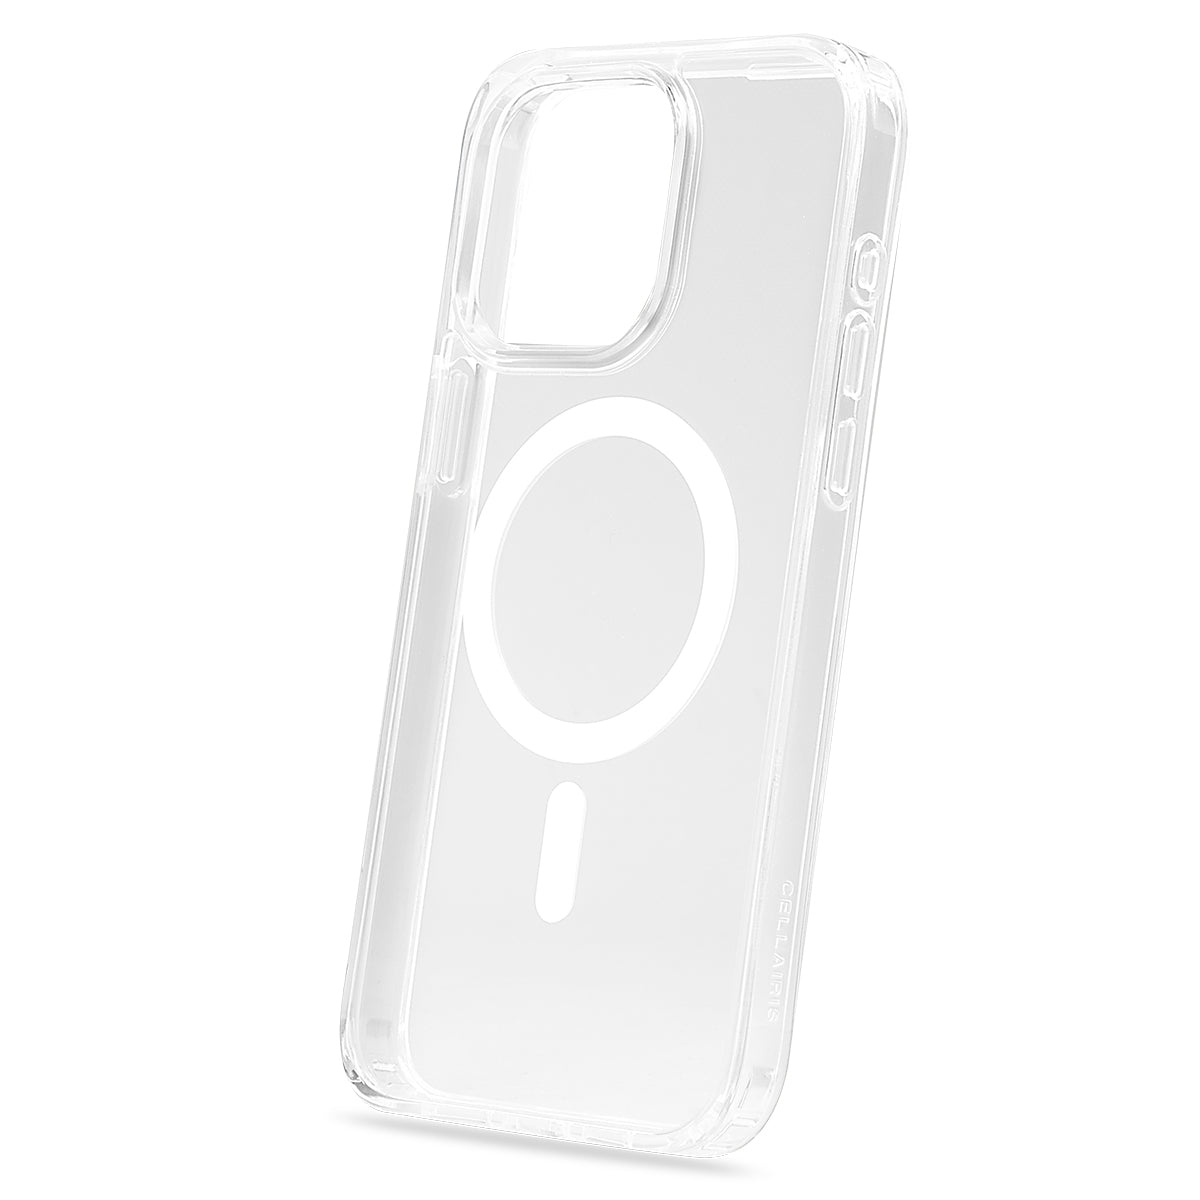 Cellairis case protector Transparente Ultra Clear para iPhone 11